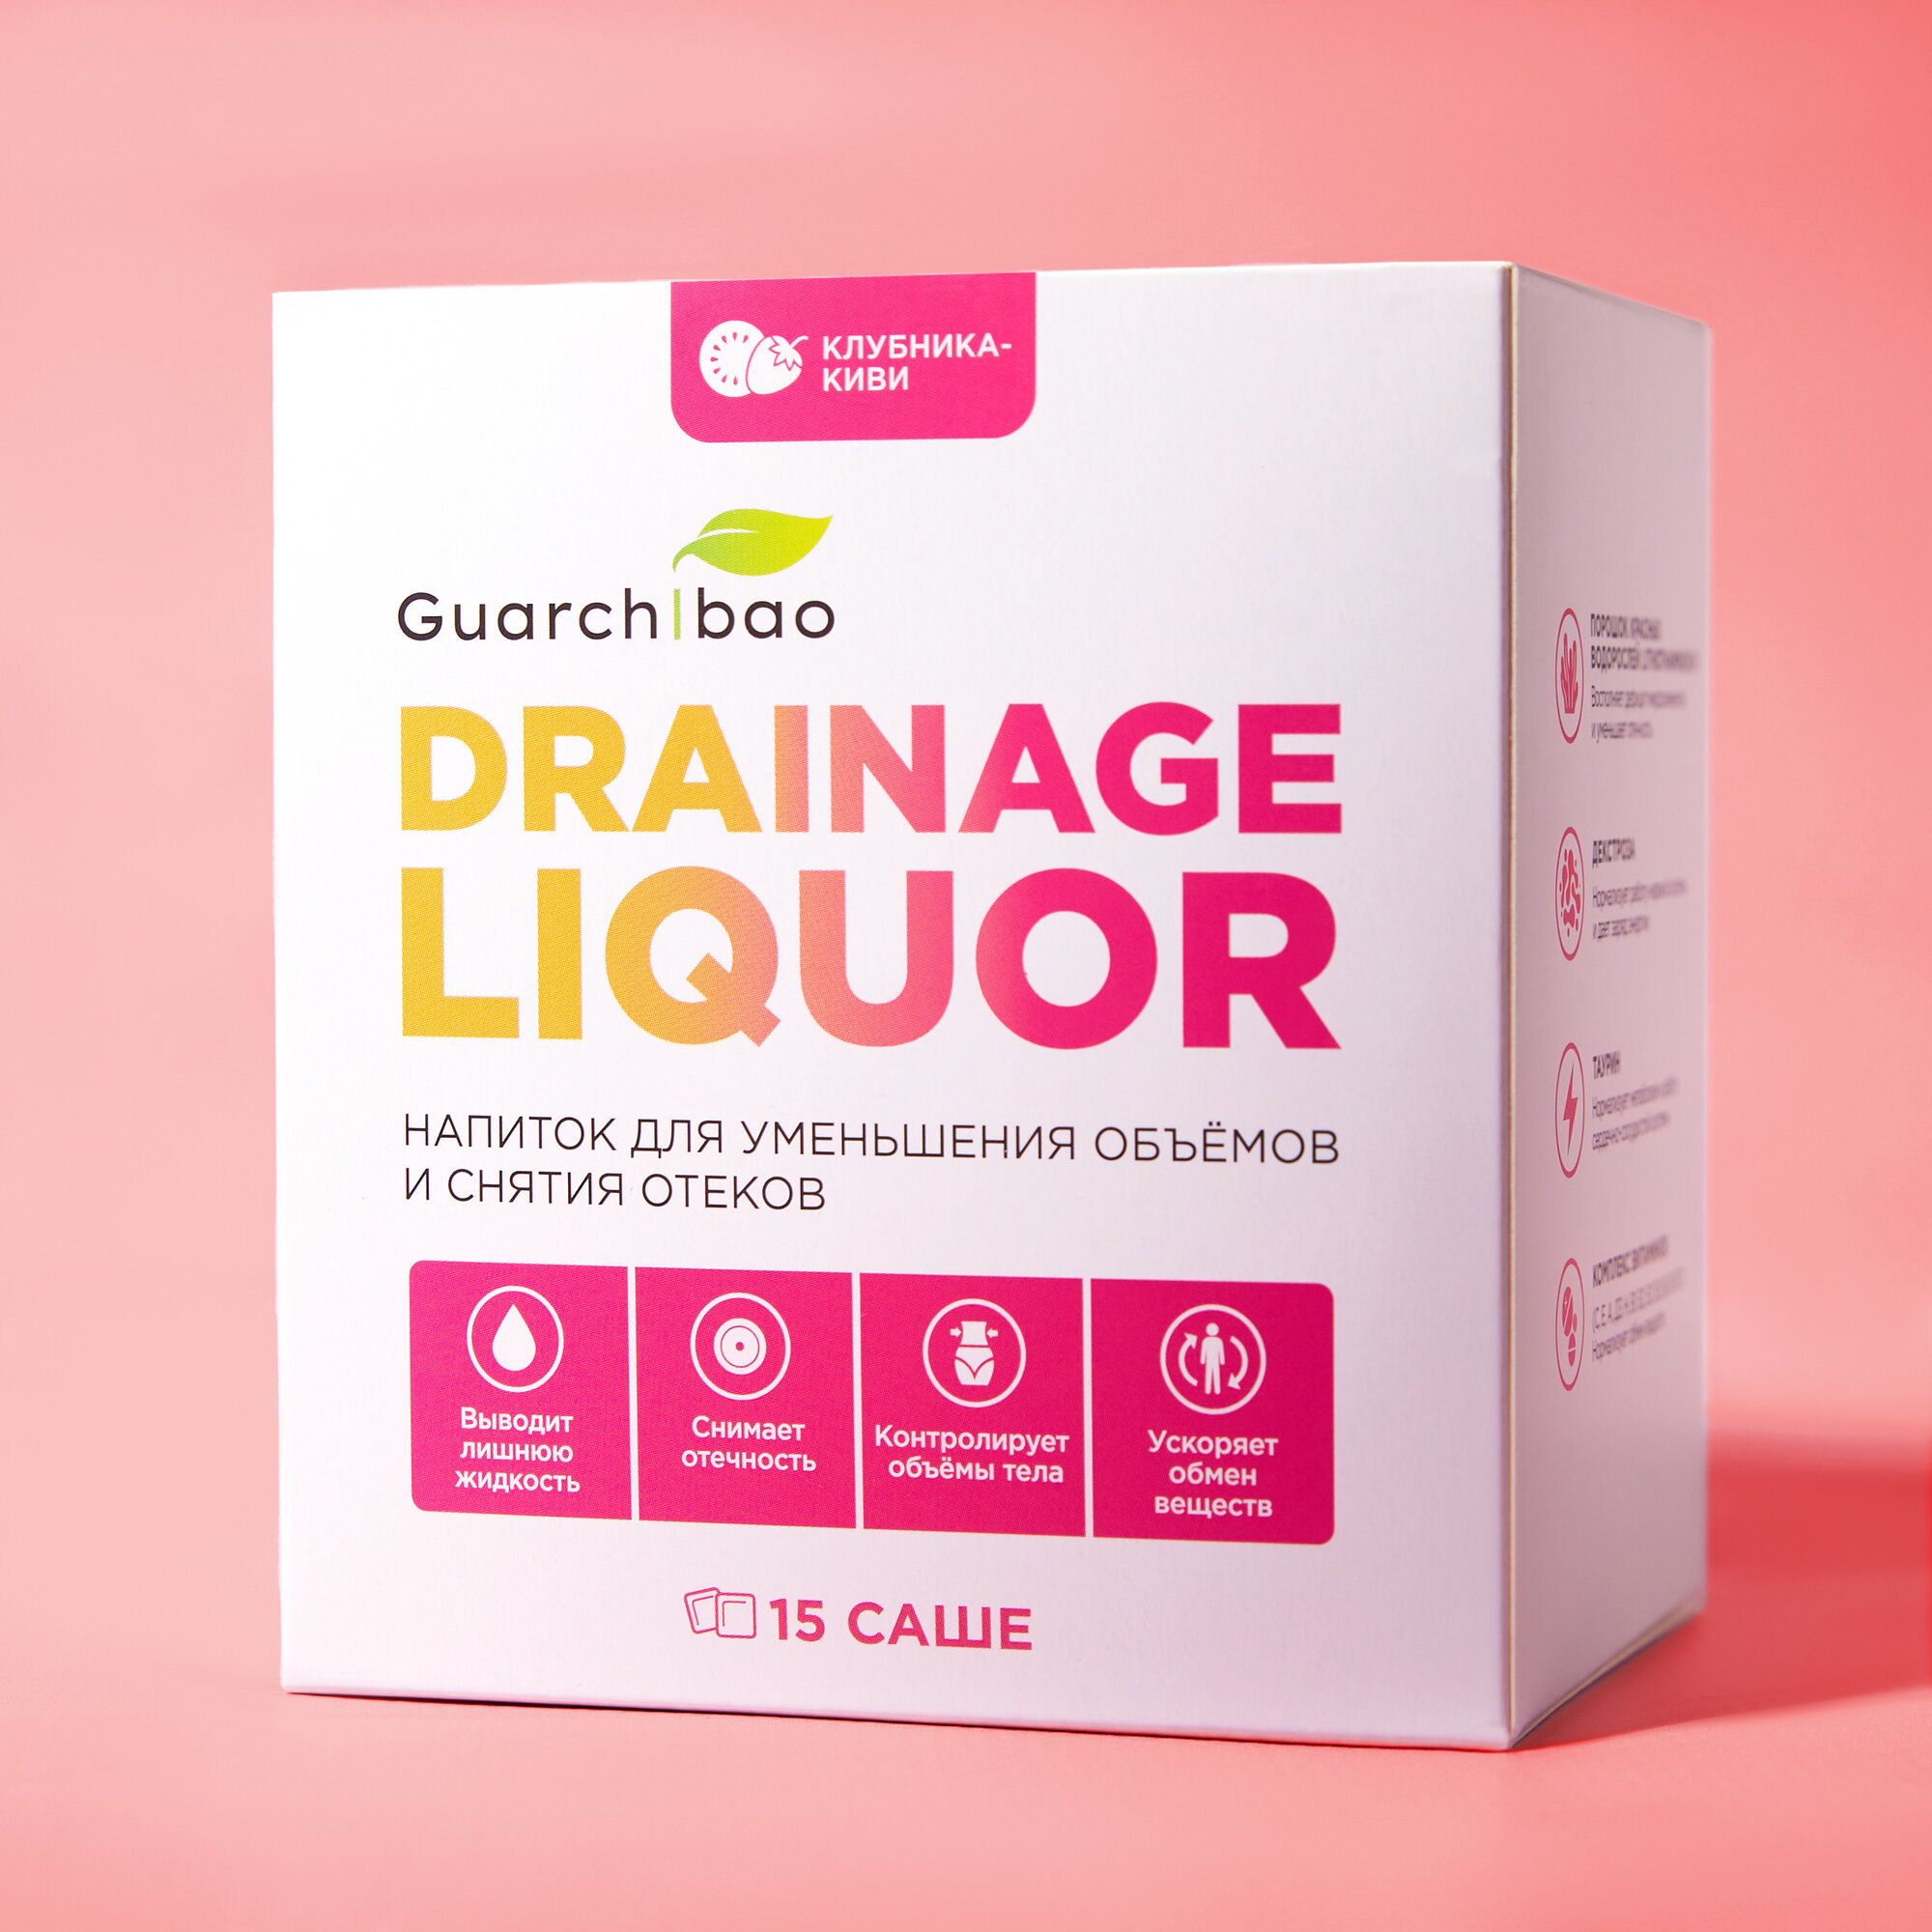 Дренажный напиток Guarchibao Drainage Liquor со вкусом Клубника-Киви для снятия отеков и уменьшения объемов, для похудения, 1 упаковка (15 саше)